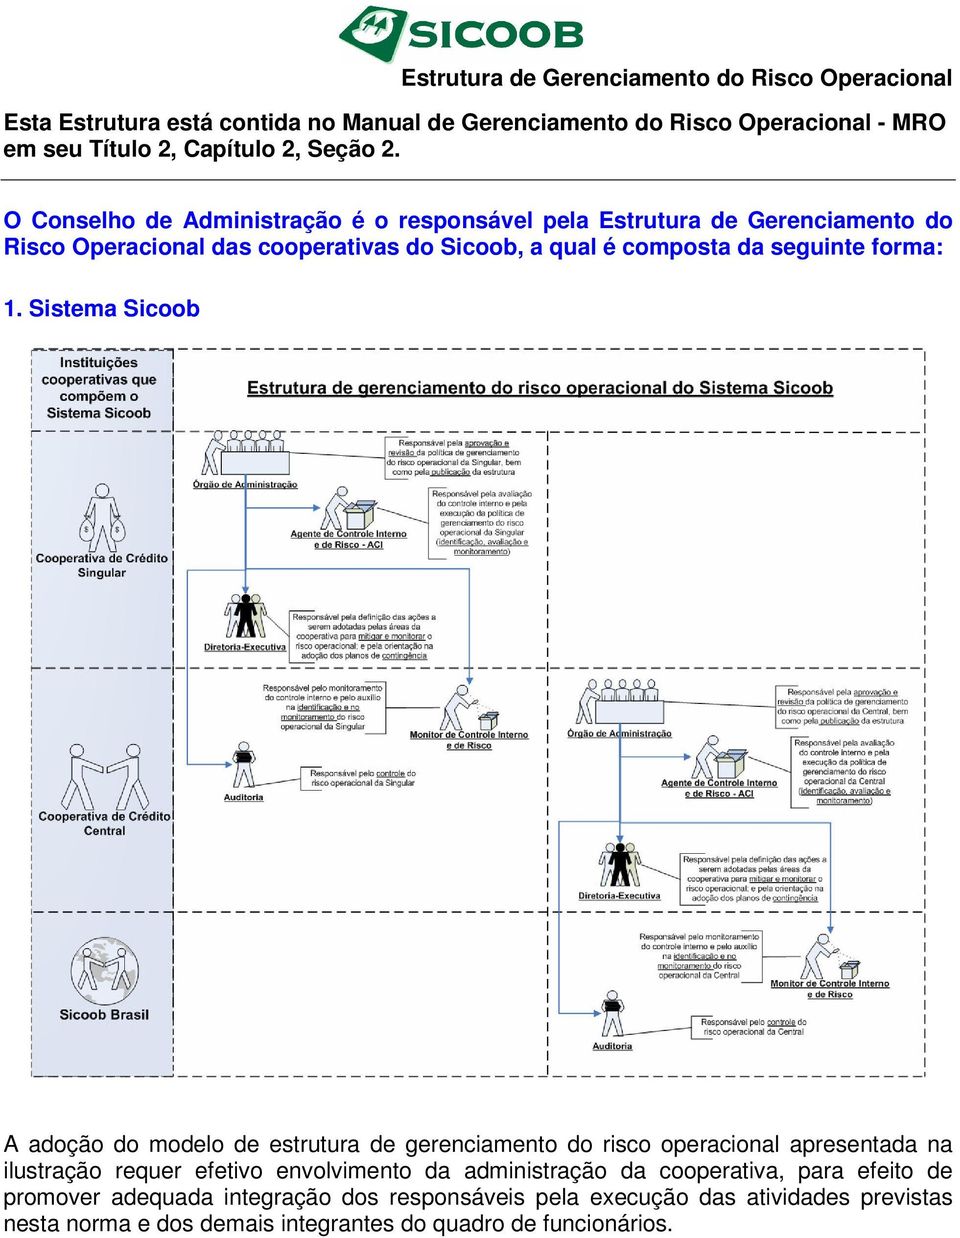 Sistema Sicoob A adoção do modelo de estrutura de gerenciamento do risco operacional apresentada na ilustração requer